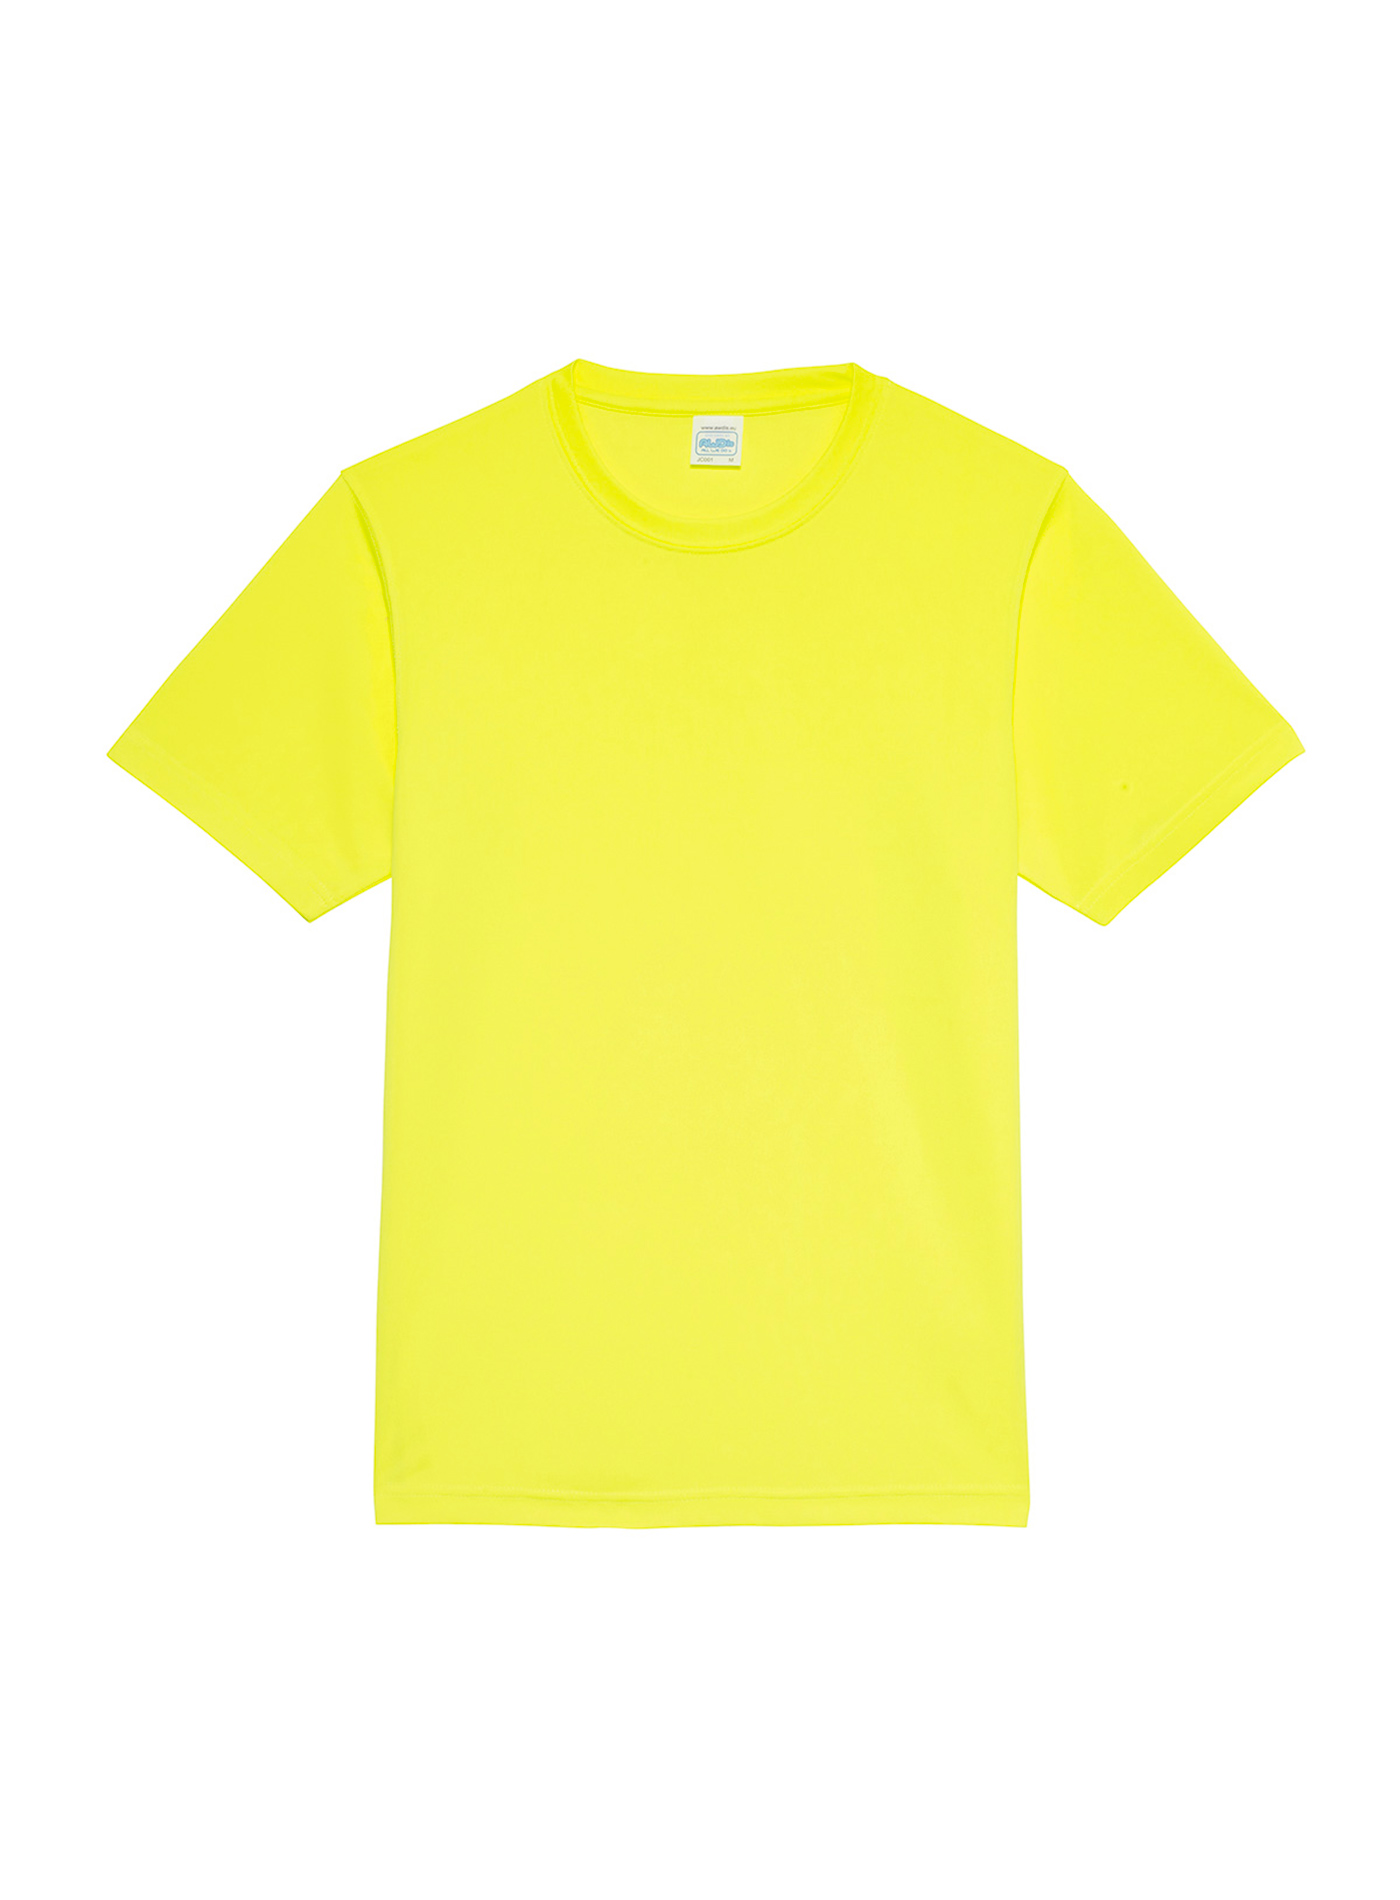 Unisex tričko Just Ts Neonlight - Neonově žlutá S